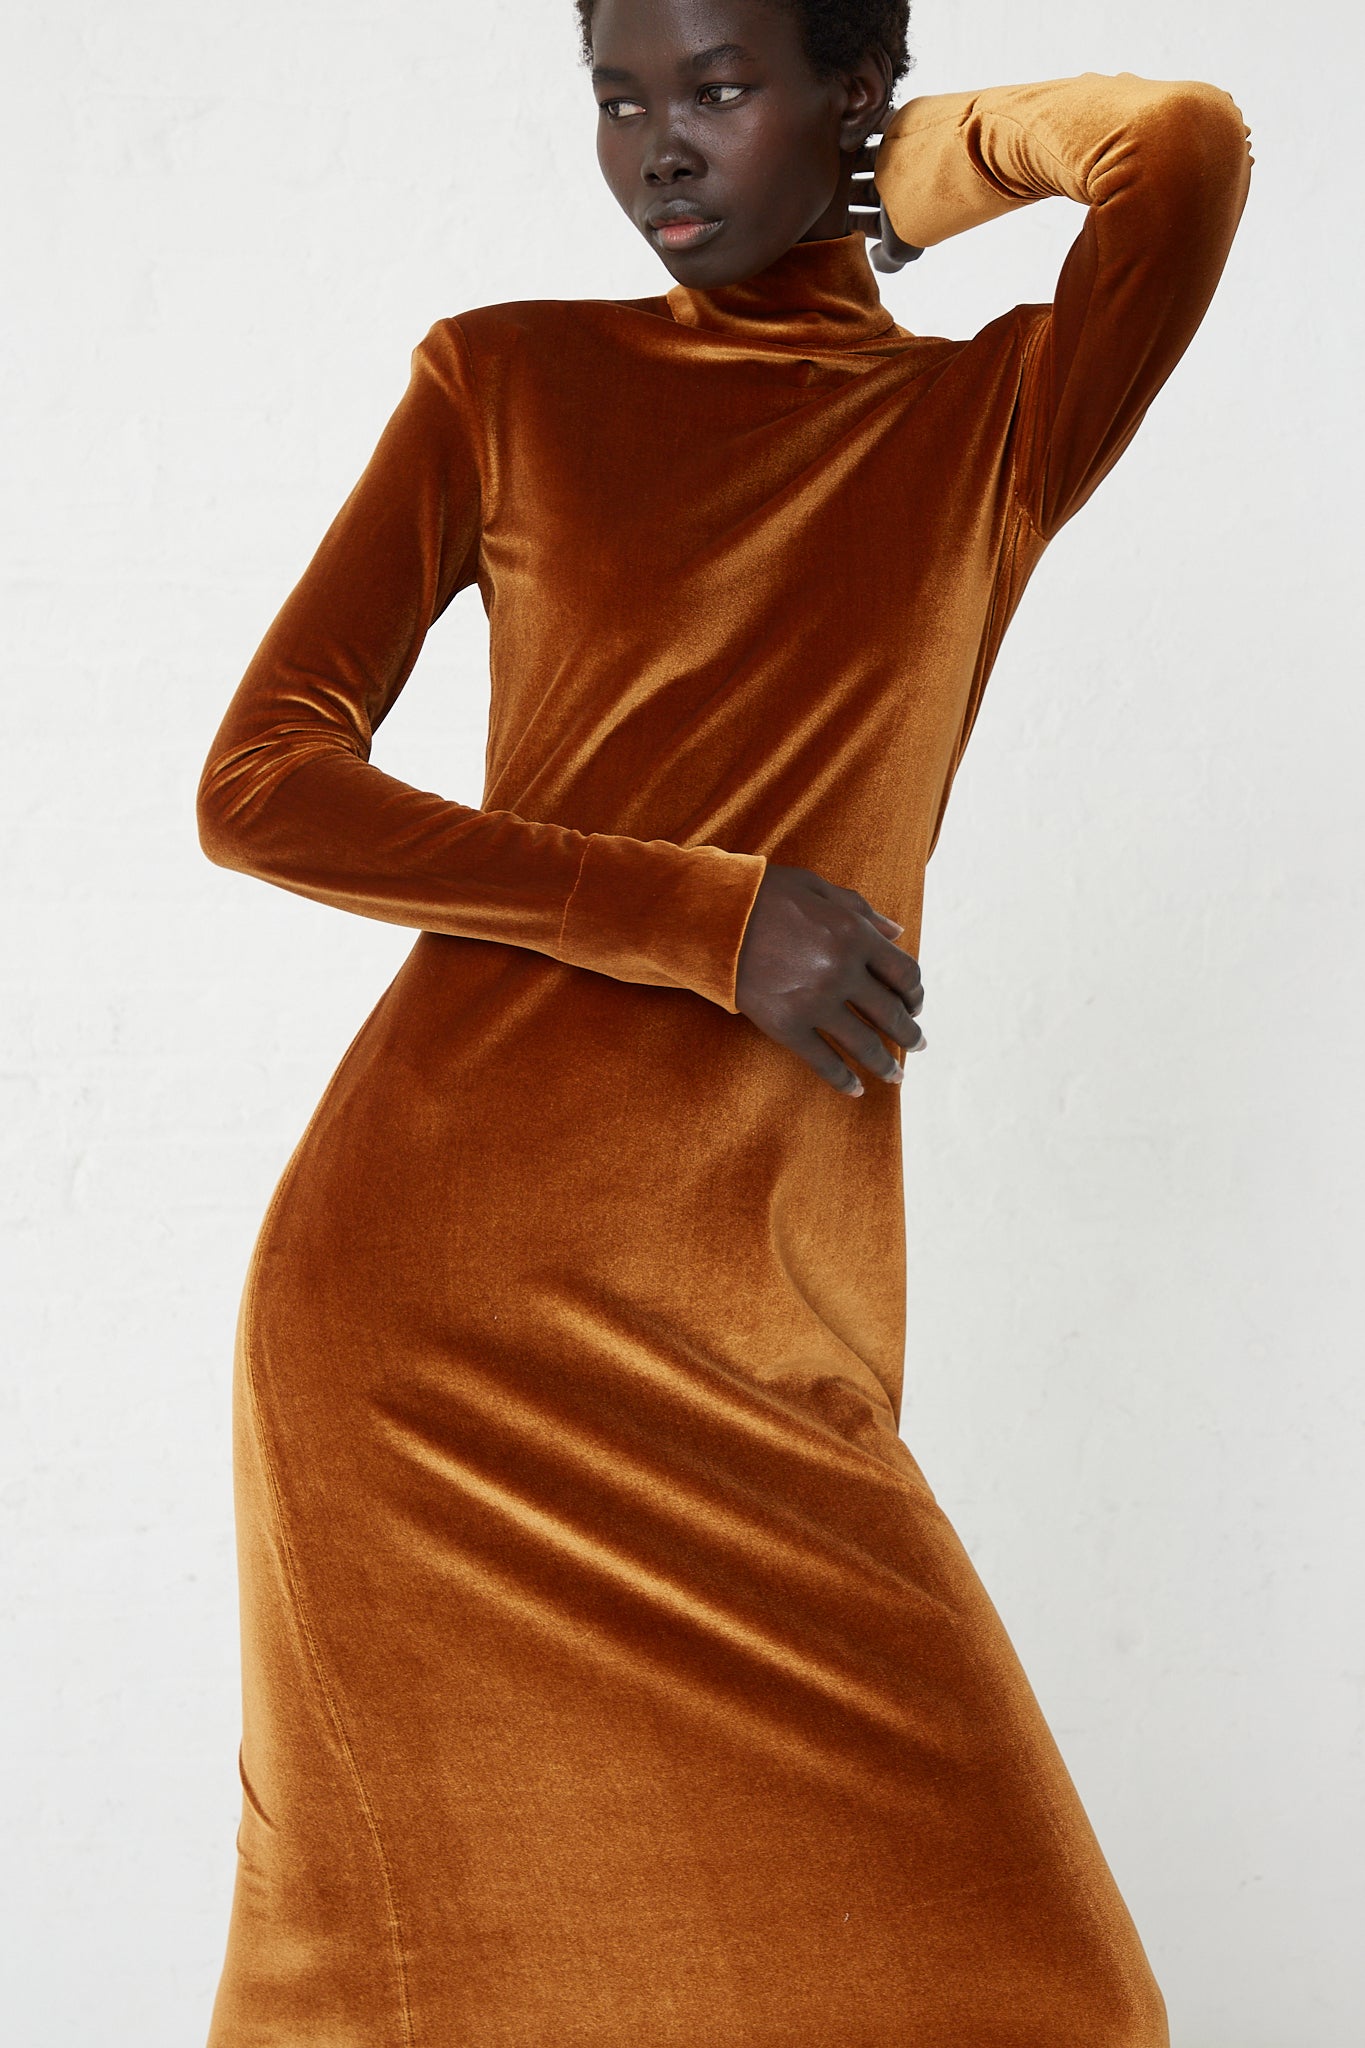 The model is wearing a Veronique Leroy Velvet Turtleneck Dress in Cognac.